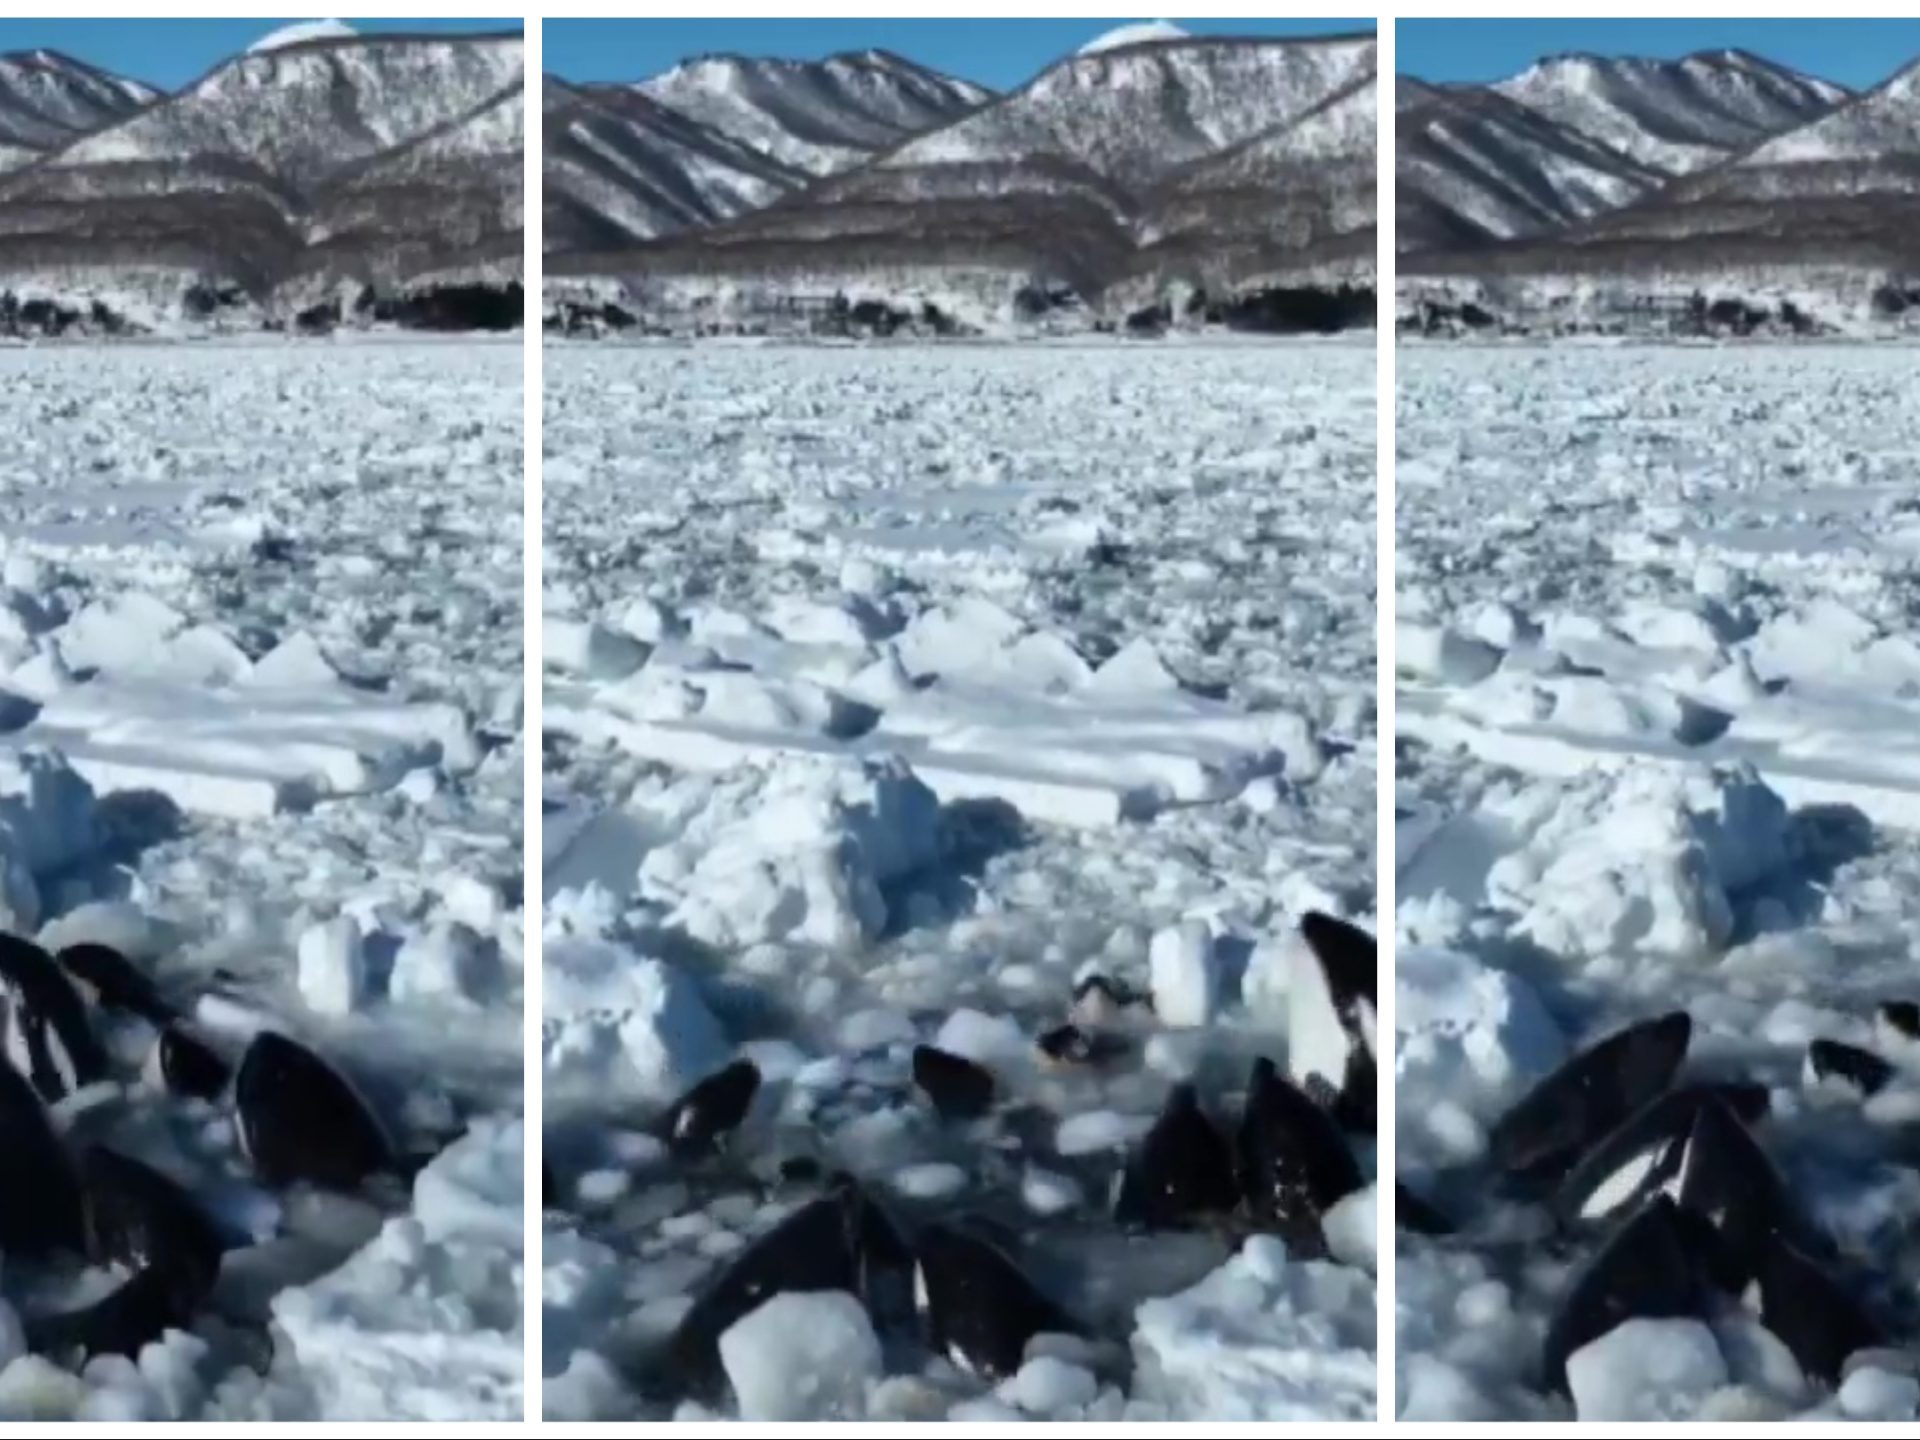 Orche intrappolate nel ghiaccio: nessuno può intervenire, lo straziante video